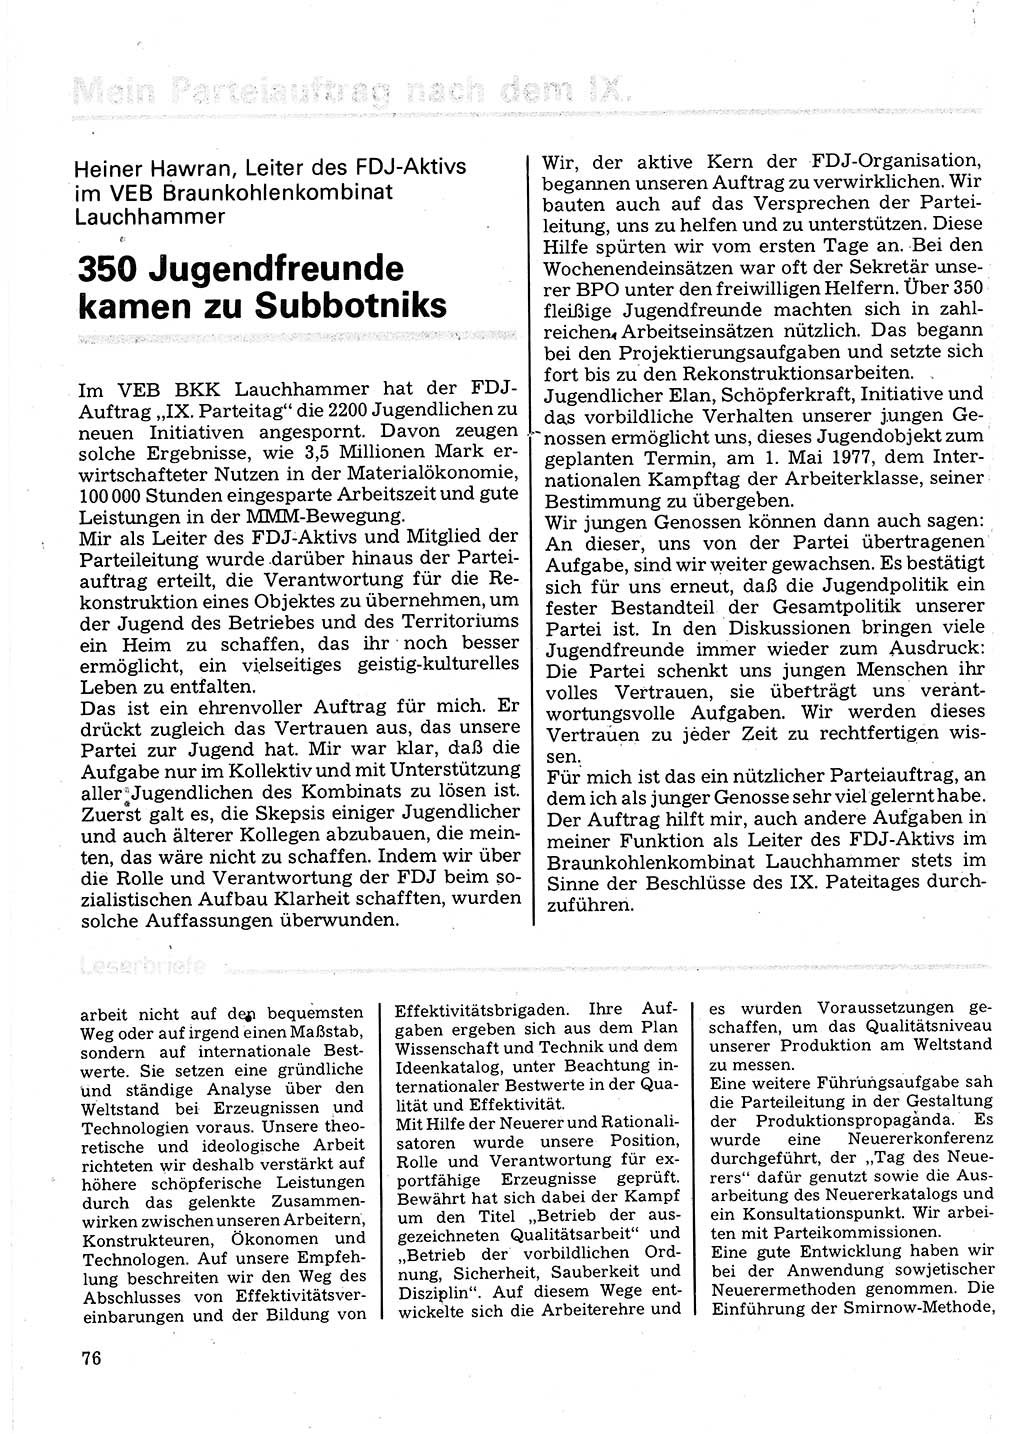 Neuer Weg (NW), Organ des Zentralkomitees (ZK) der SED (Sozialistische Einheitspartei Deutschlands) für Fragen des Parteilebens, 32. Jahrgang [Deutsche Demokratische Republik (DDR)] 1977, Seite 76 (NW ZK SED DDR 1977, S. 76)